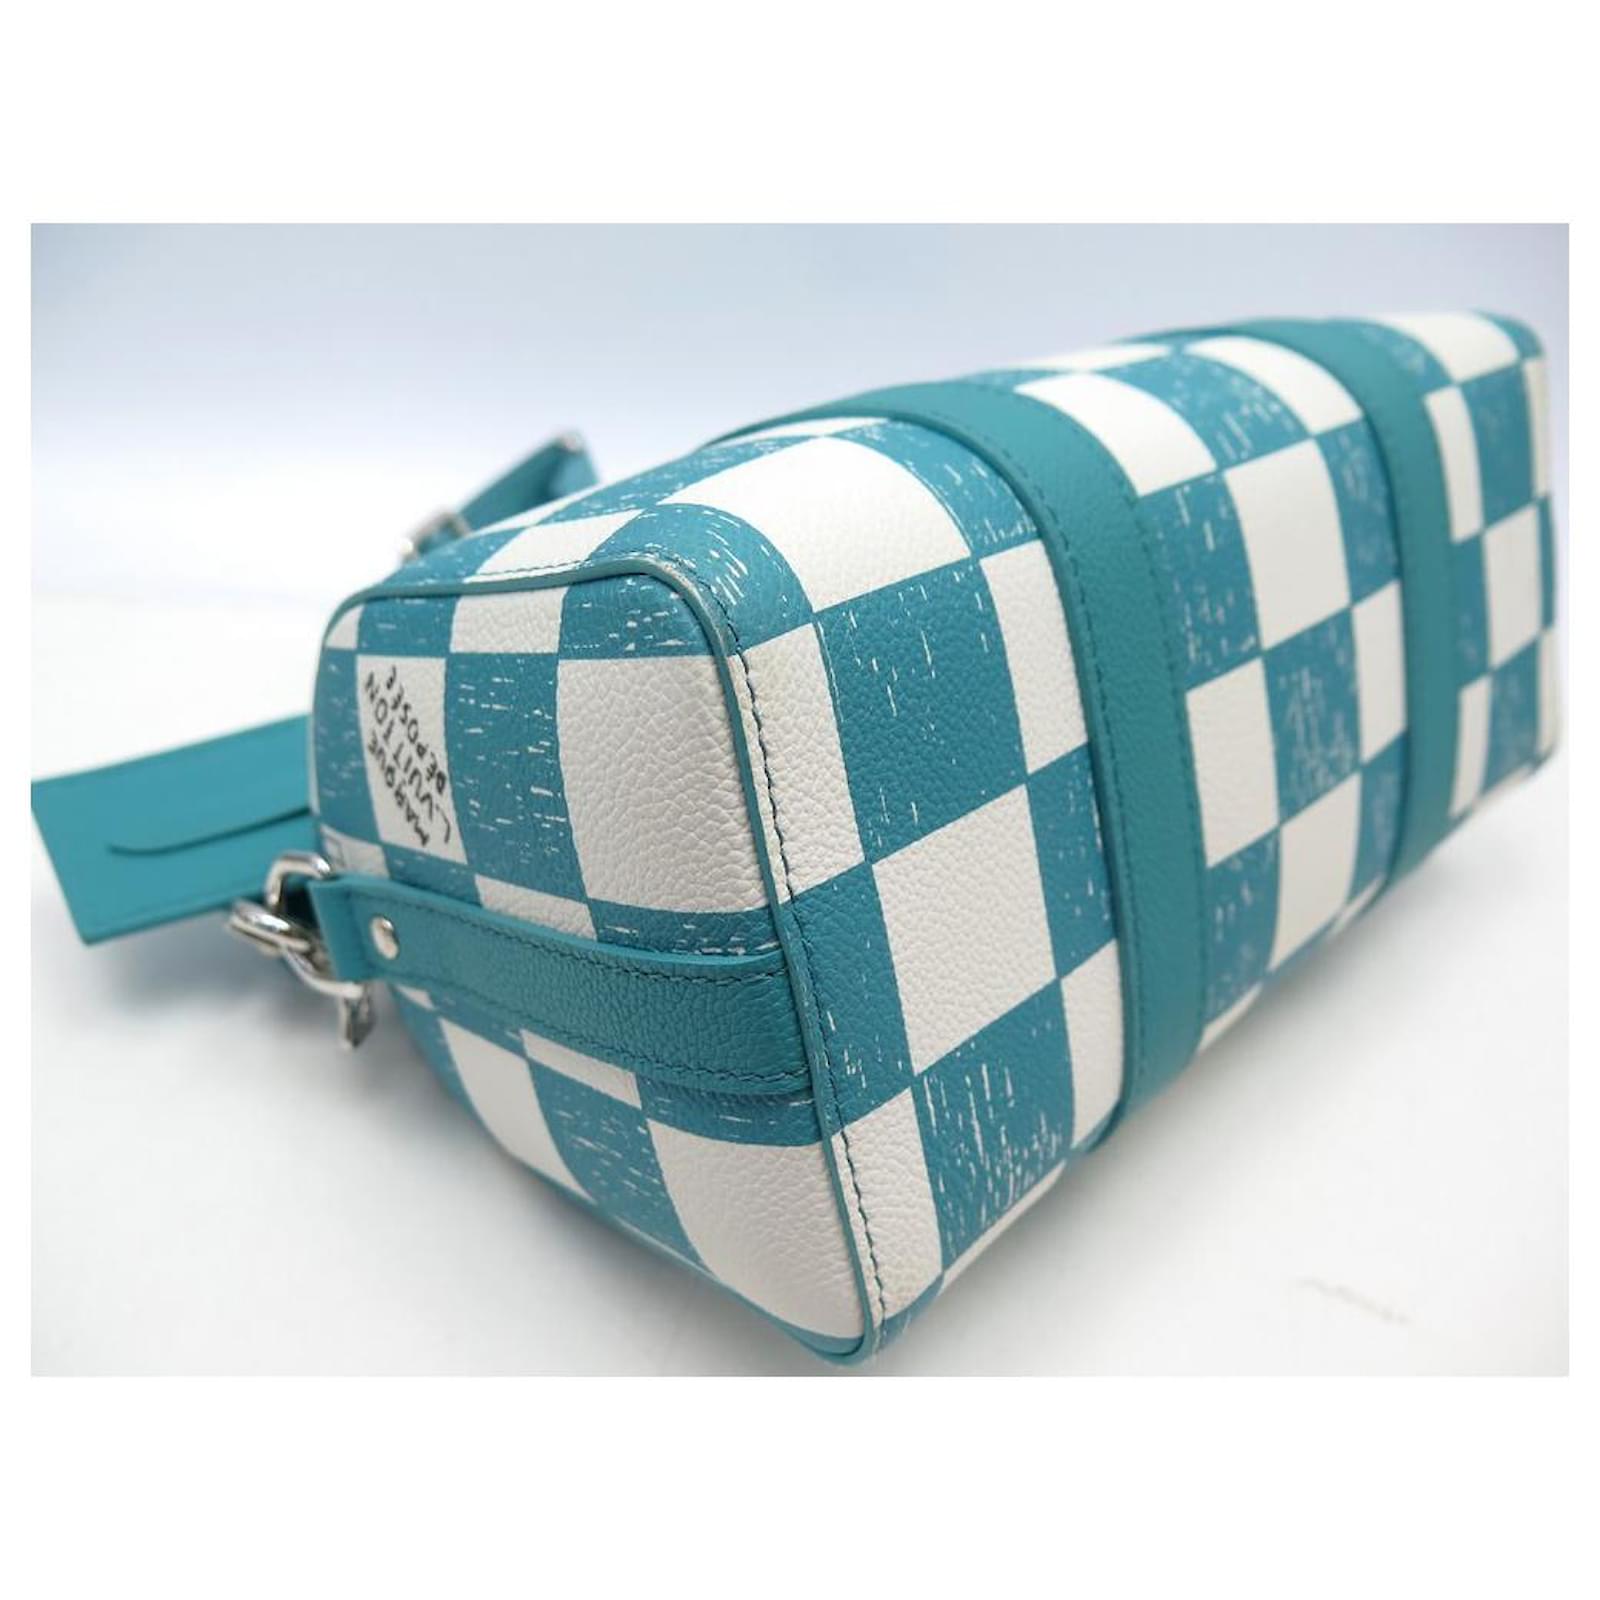 N50076 Louis Vuitton Damier Checkerboard City Keepall Bag